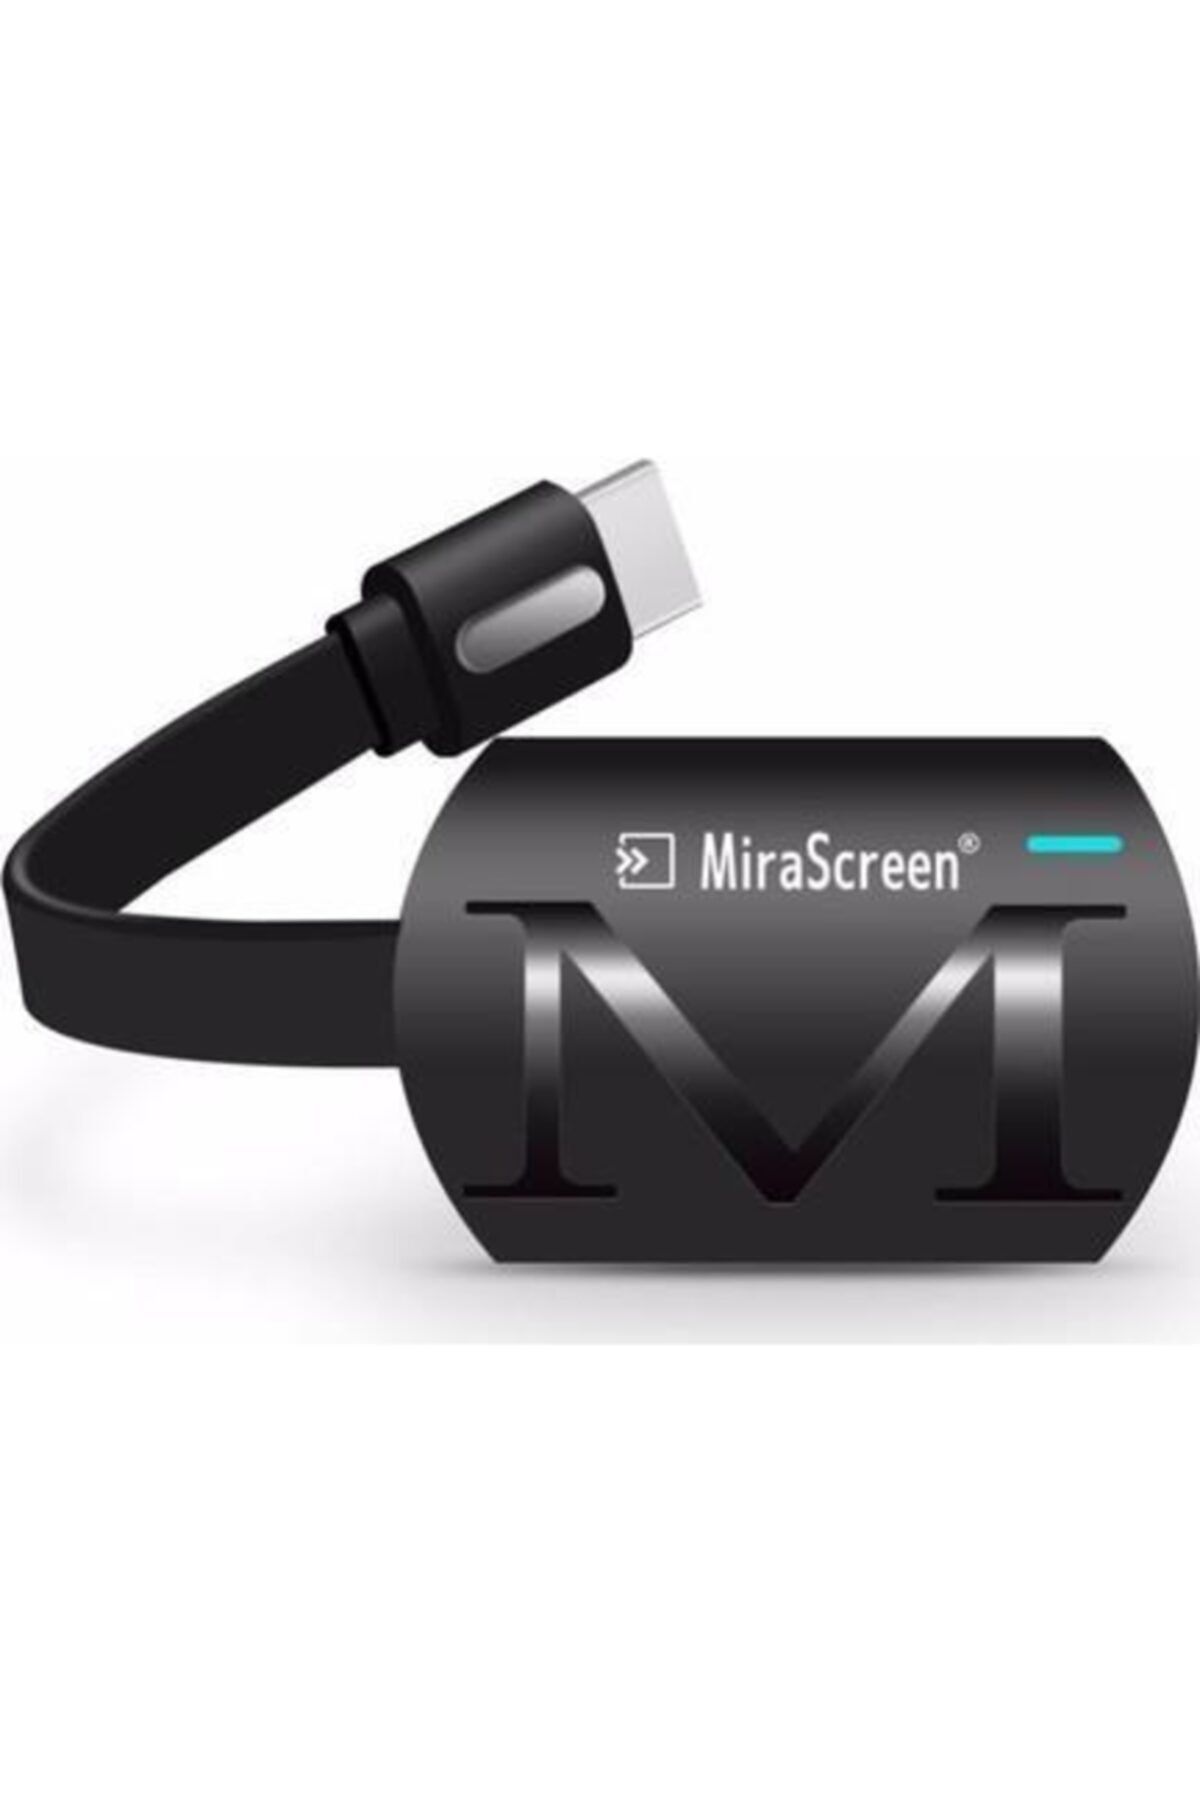 Noriyen Yeni Sürüm Mirascreen G4 Kablosuz Hdmı Görüntü Aktarıcı 1080p